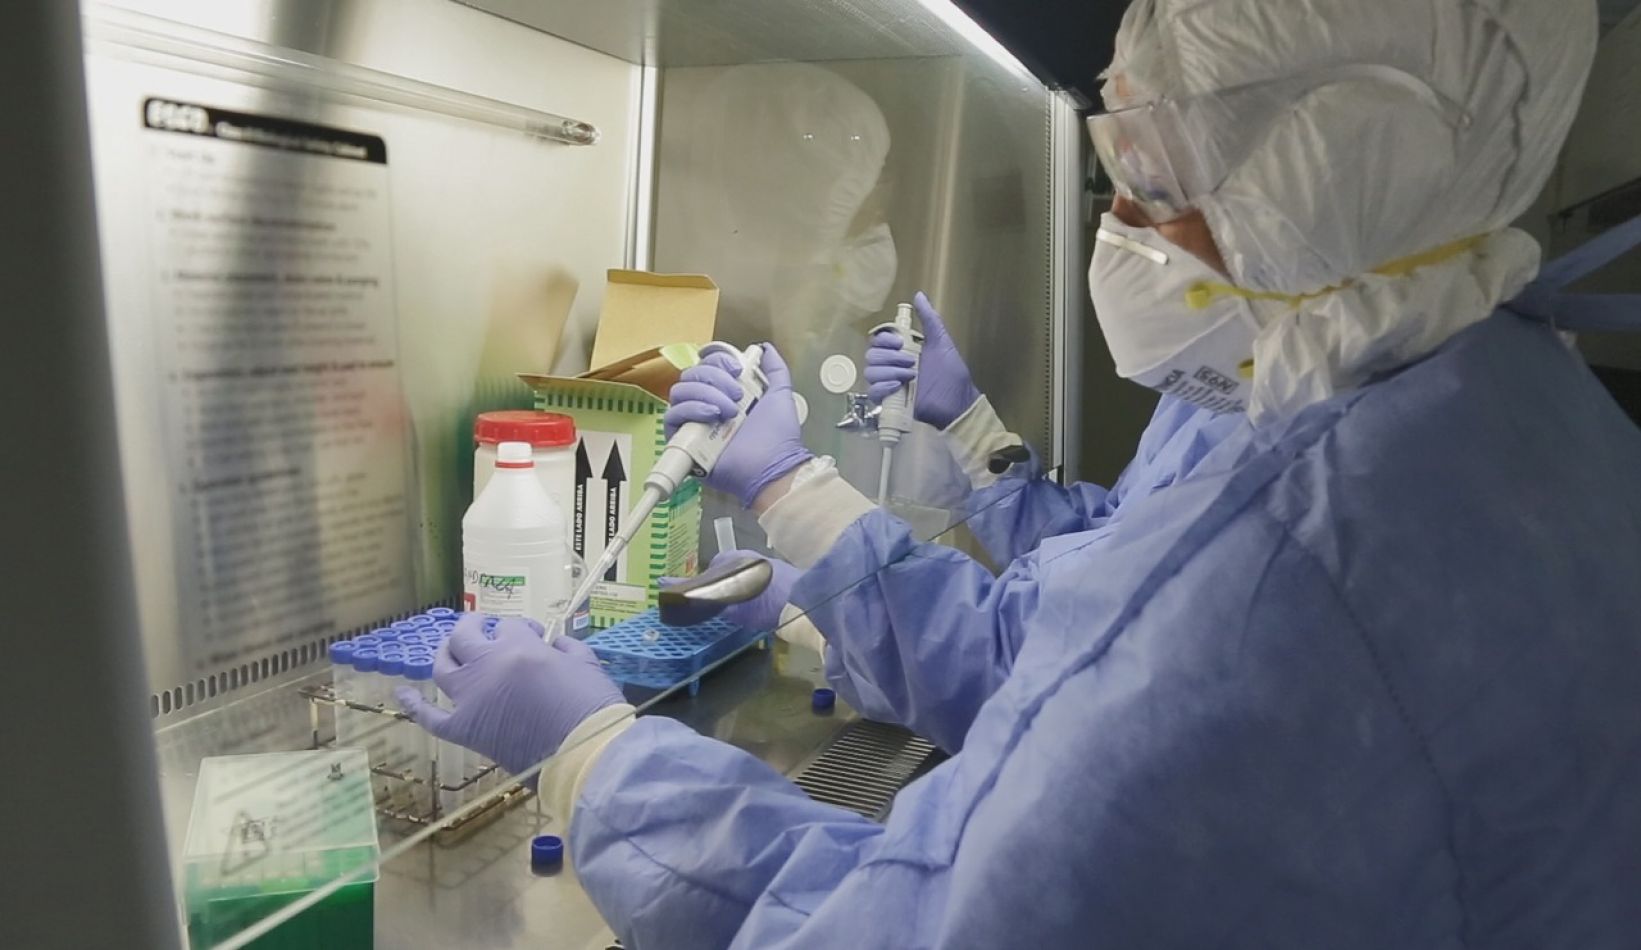 Se espera el resultado de 4 análisis de coronavirus en Salta